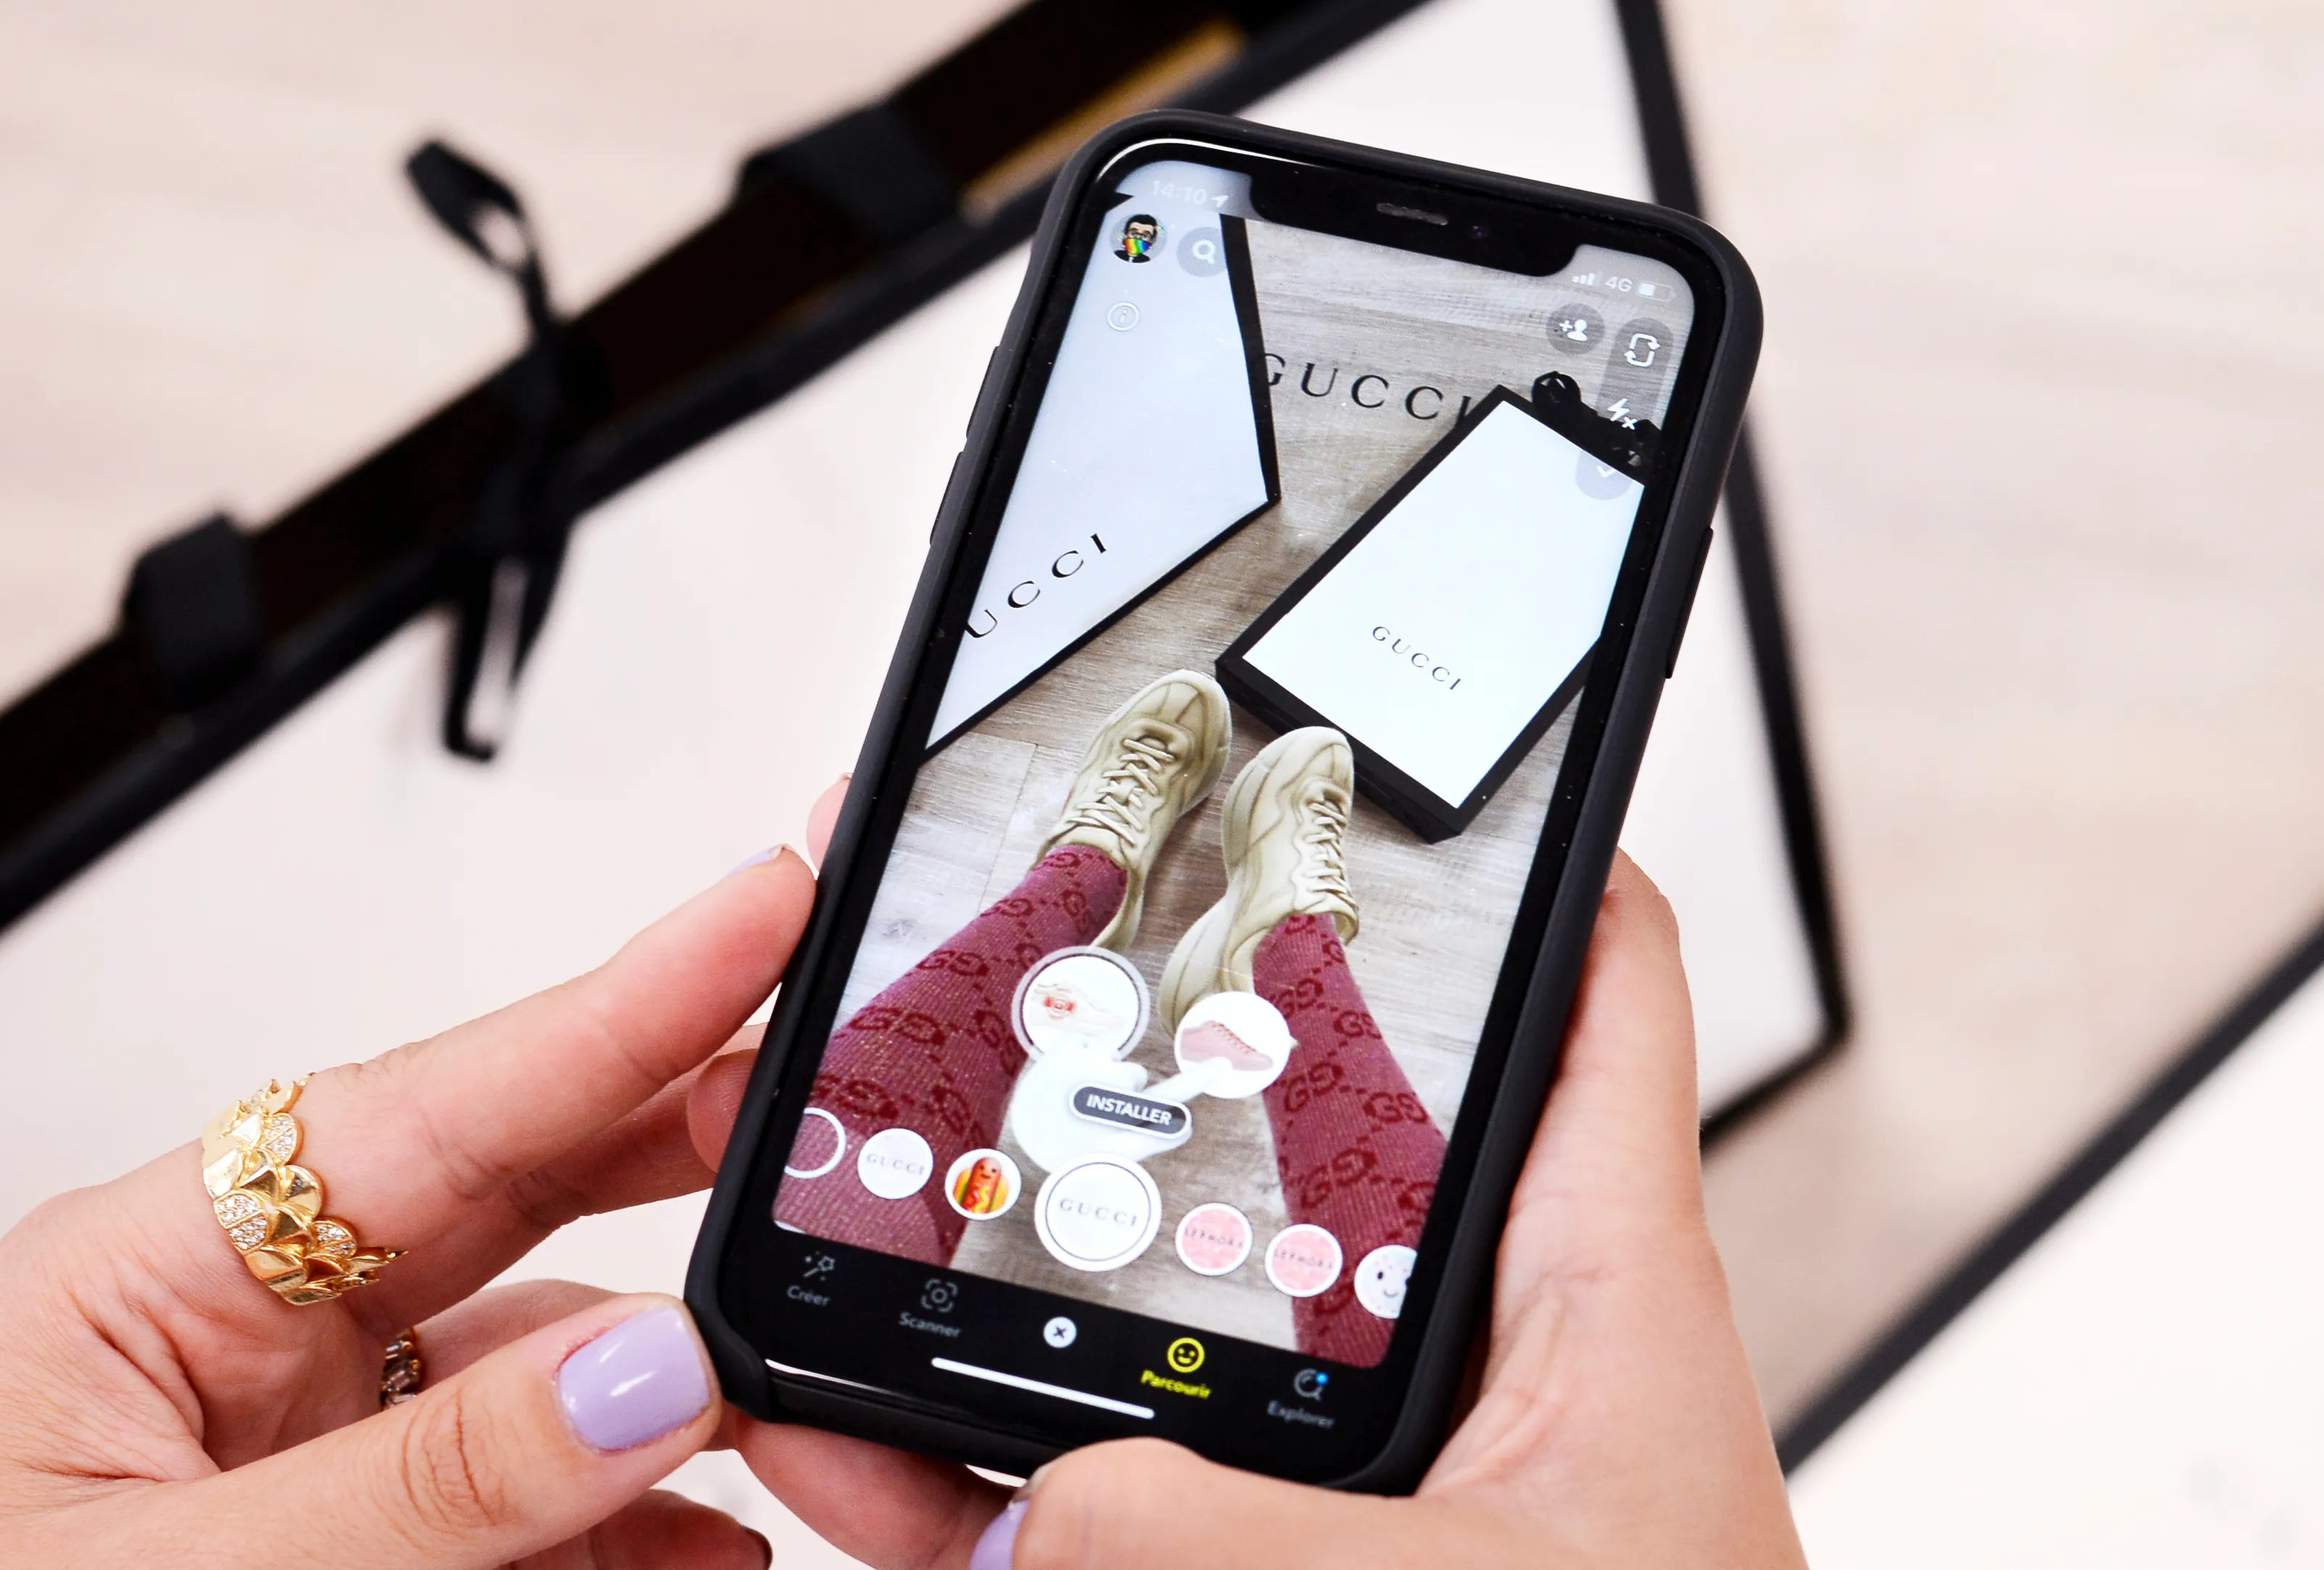 Shoppable AR lenses for Snapchat